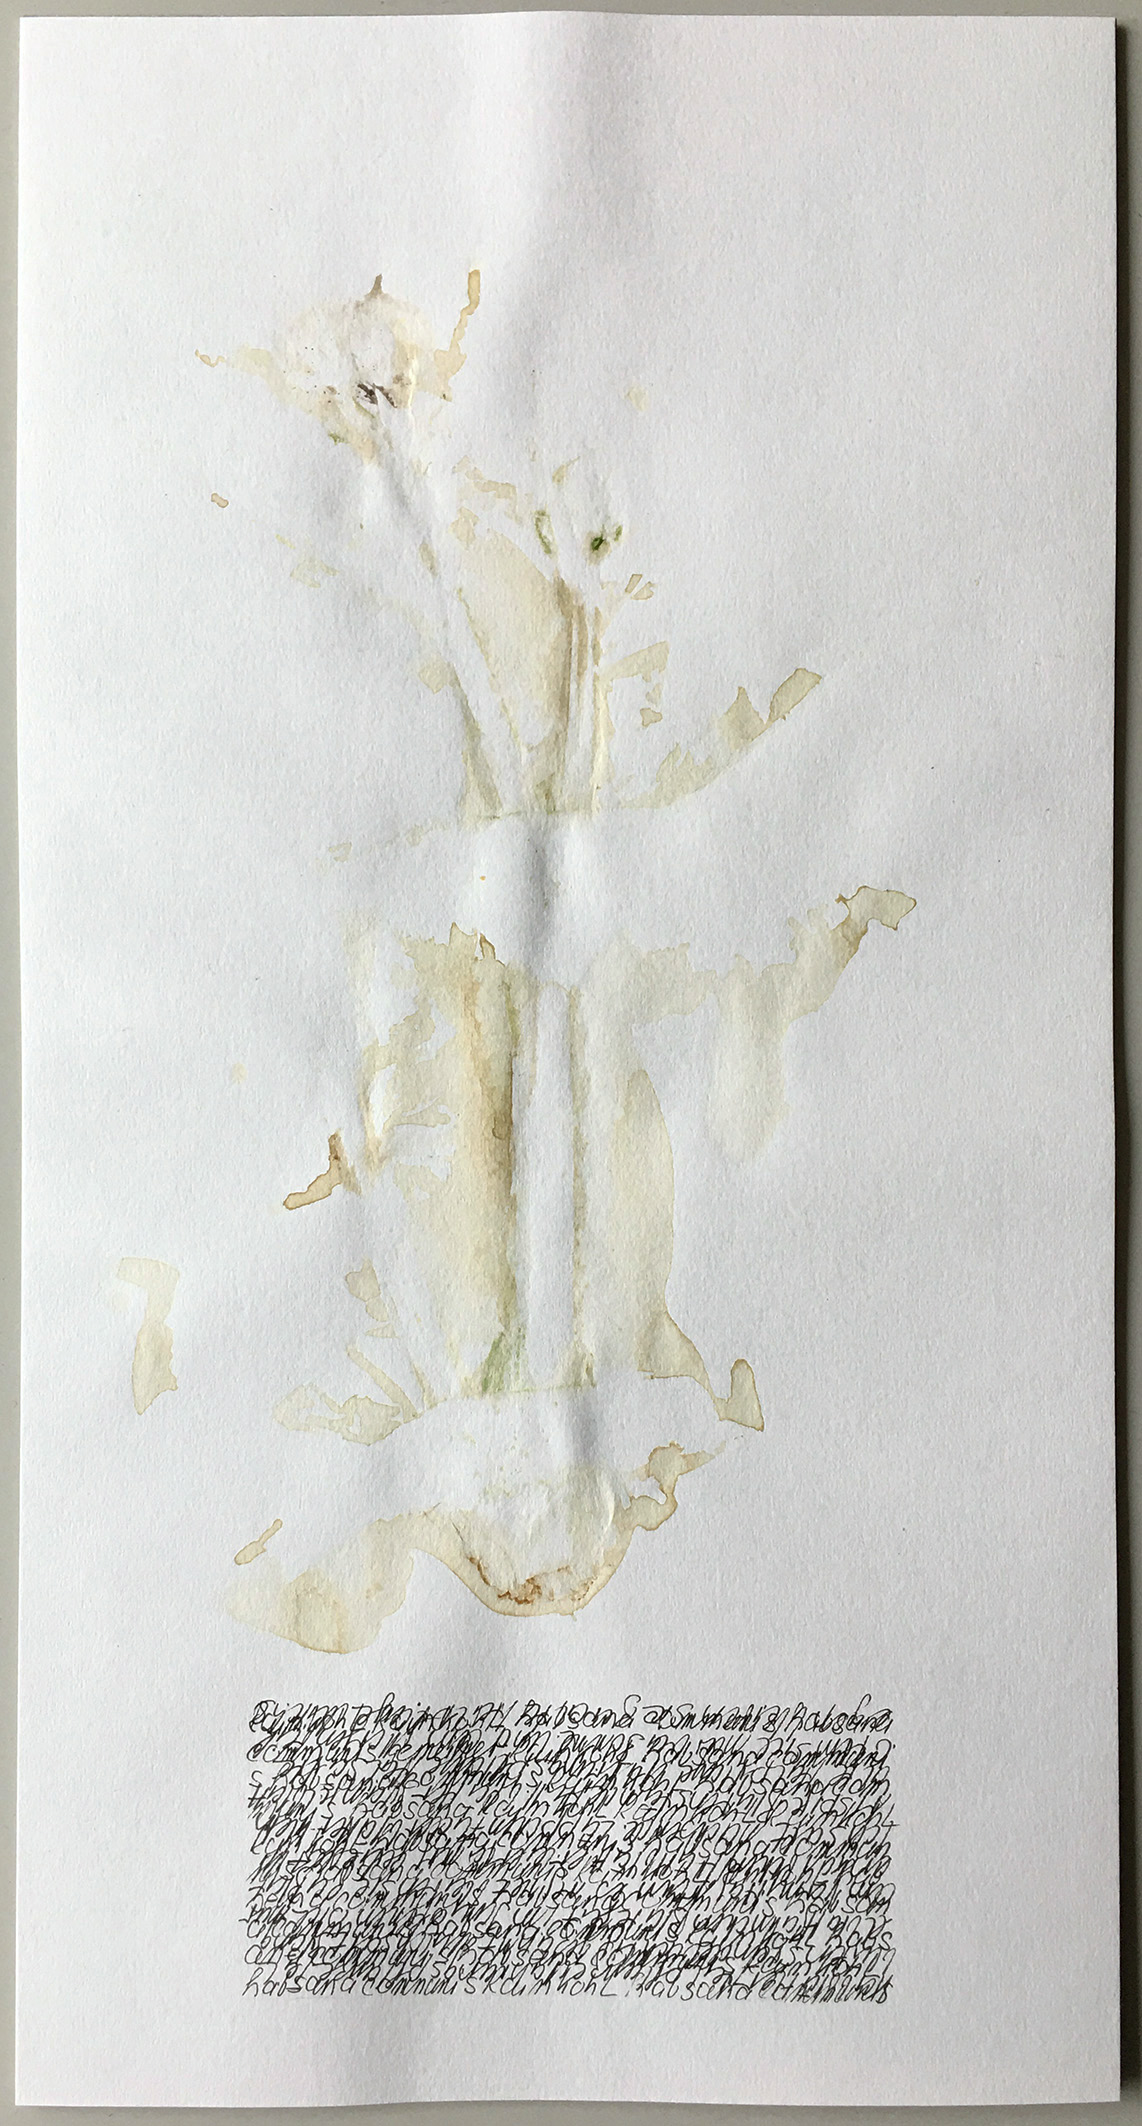 künstlerisches herbarium. prägung der pflanze Rainkohl. assotiativer text in handschrift